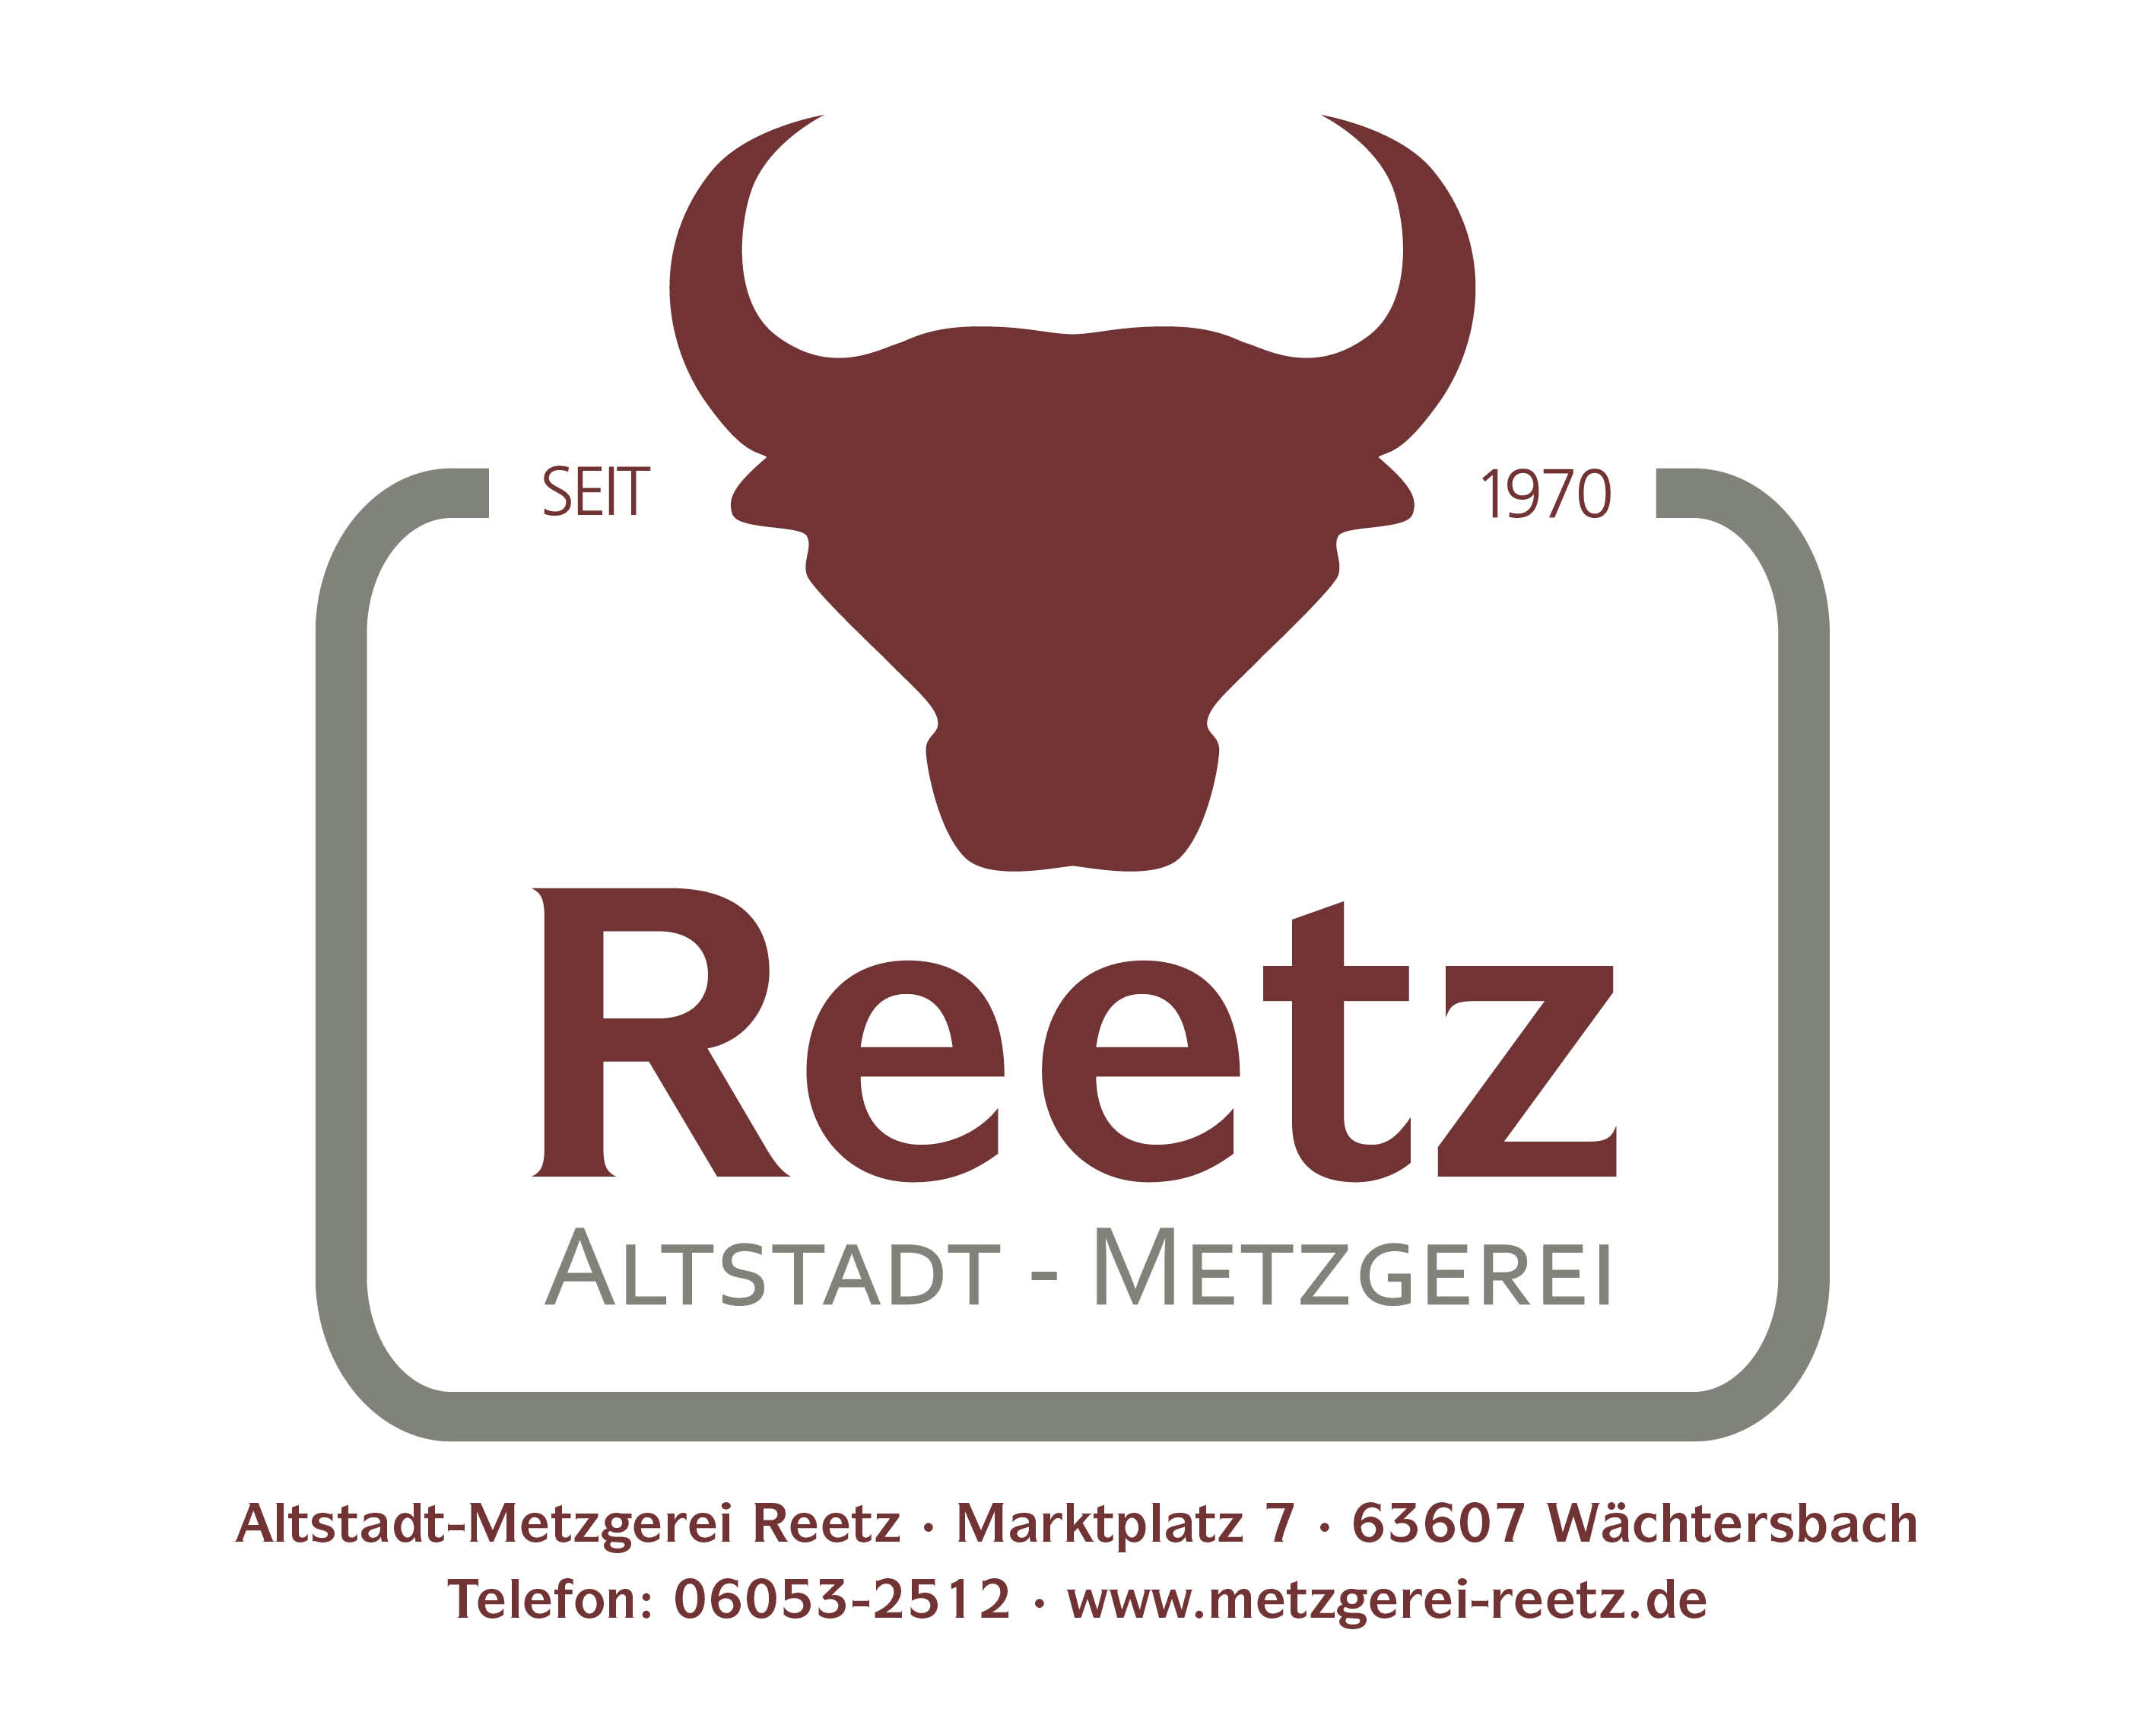 (c) Metzgerei-reetz.de